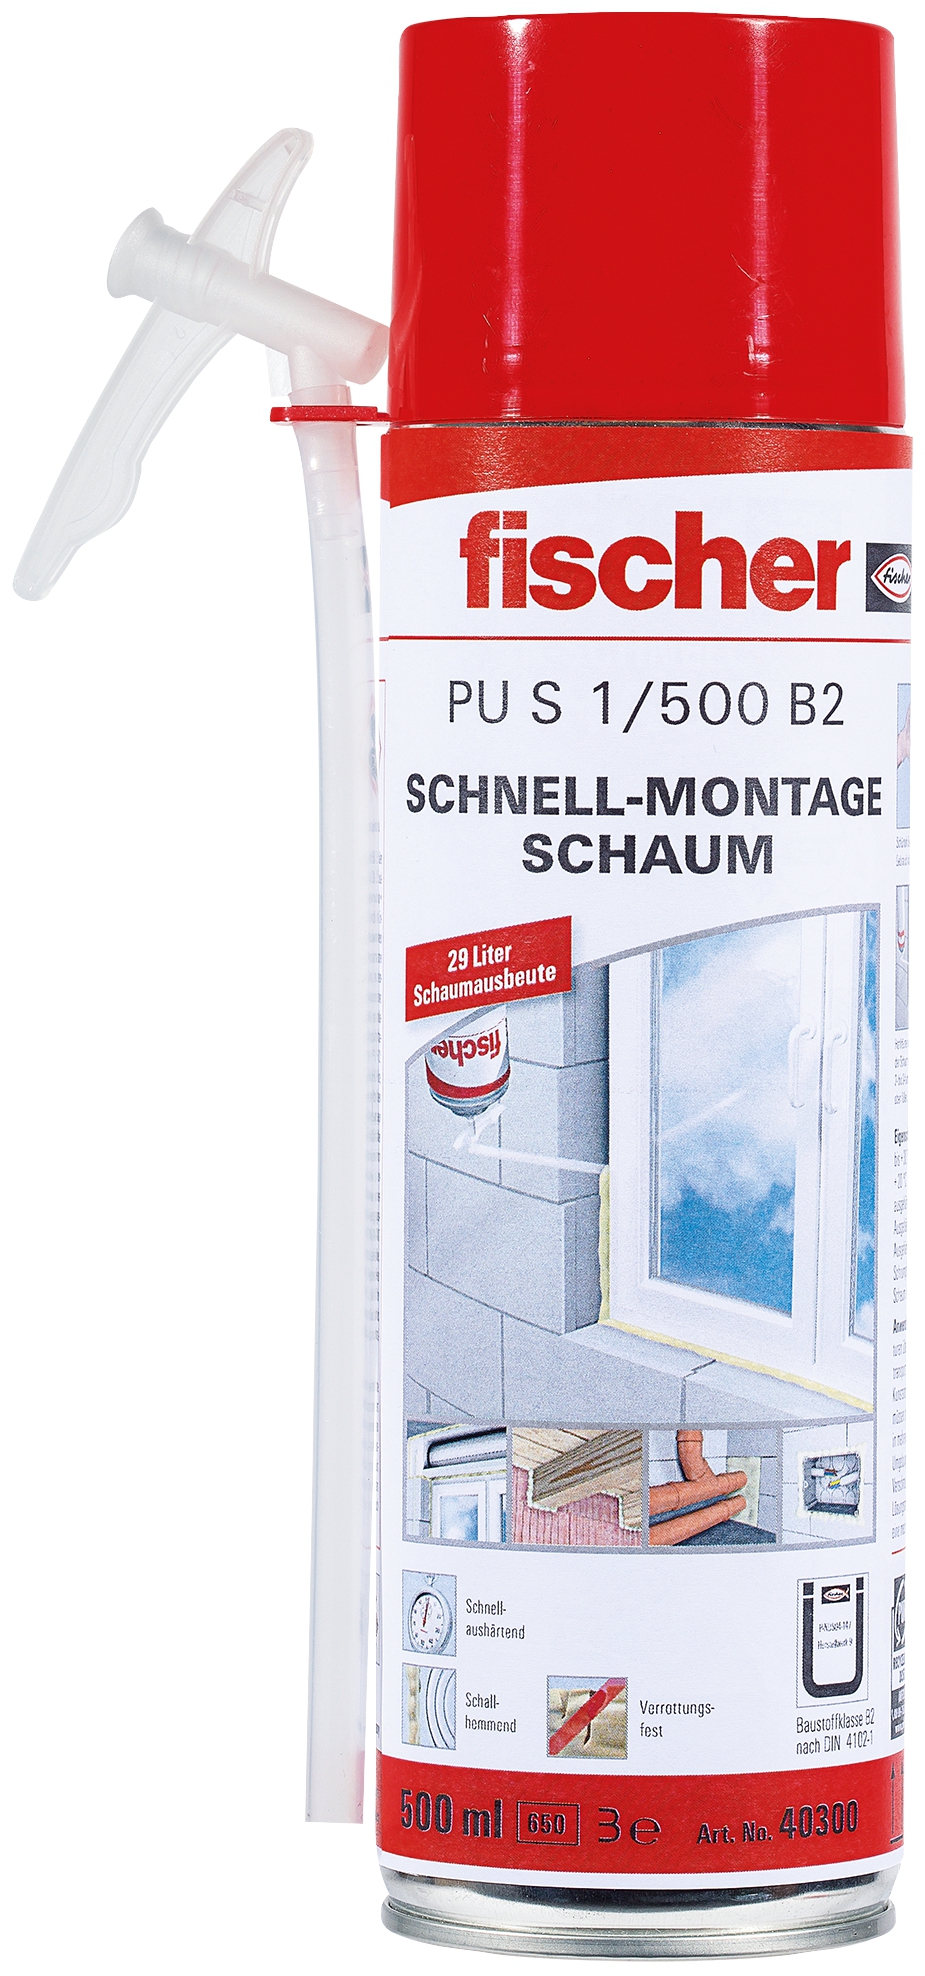 Fischer PU S 500. Der Schnellmontageschaum mit geprüfter Schalldämmung und Wasserdruckbeständigkeit für den Profi.